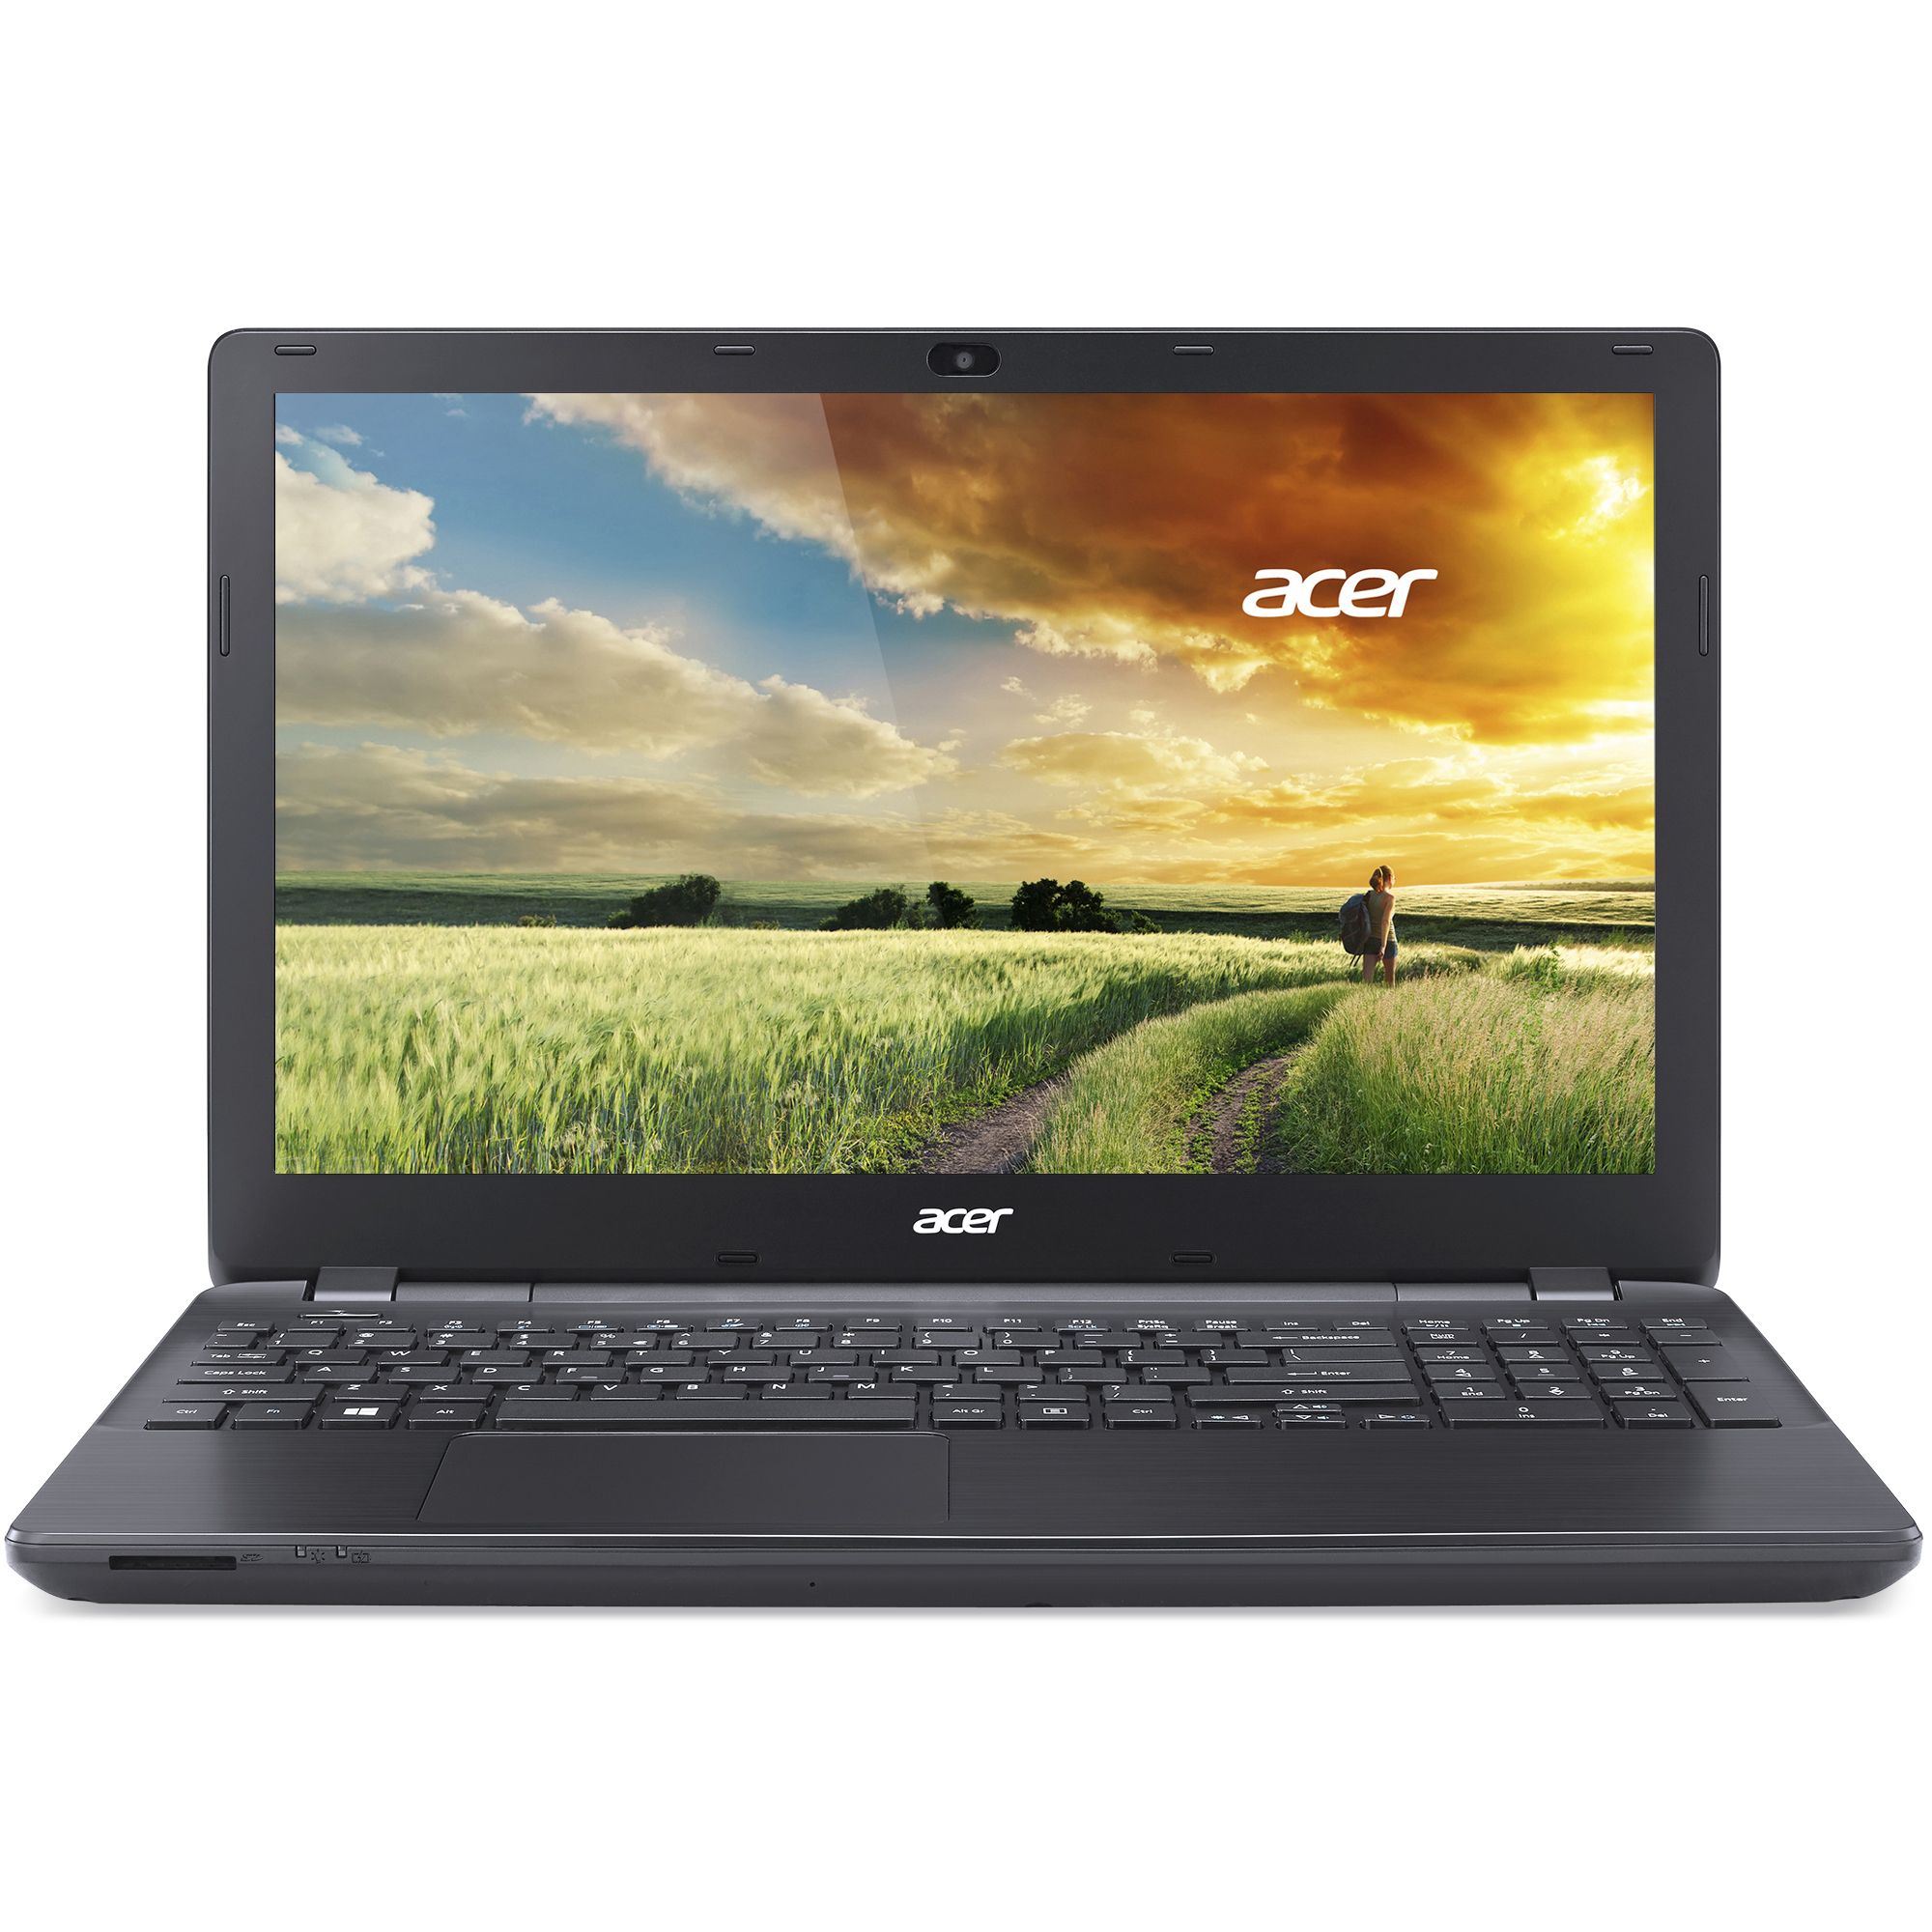  Laptop Acer ES1-531-C81K, Intel Celeron N3050, 4GB DDR3, HDD 500GB, Intel HD Graphics, Free DOS 